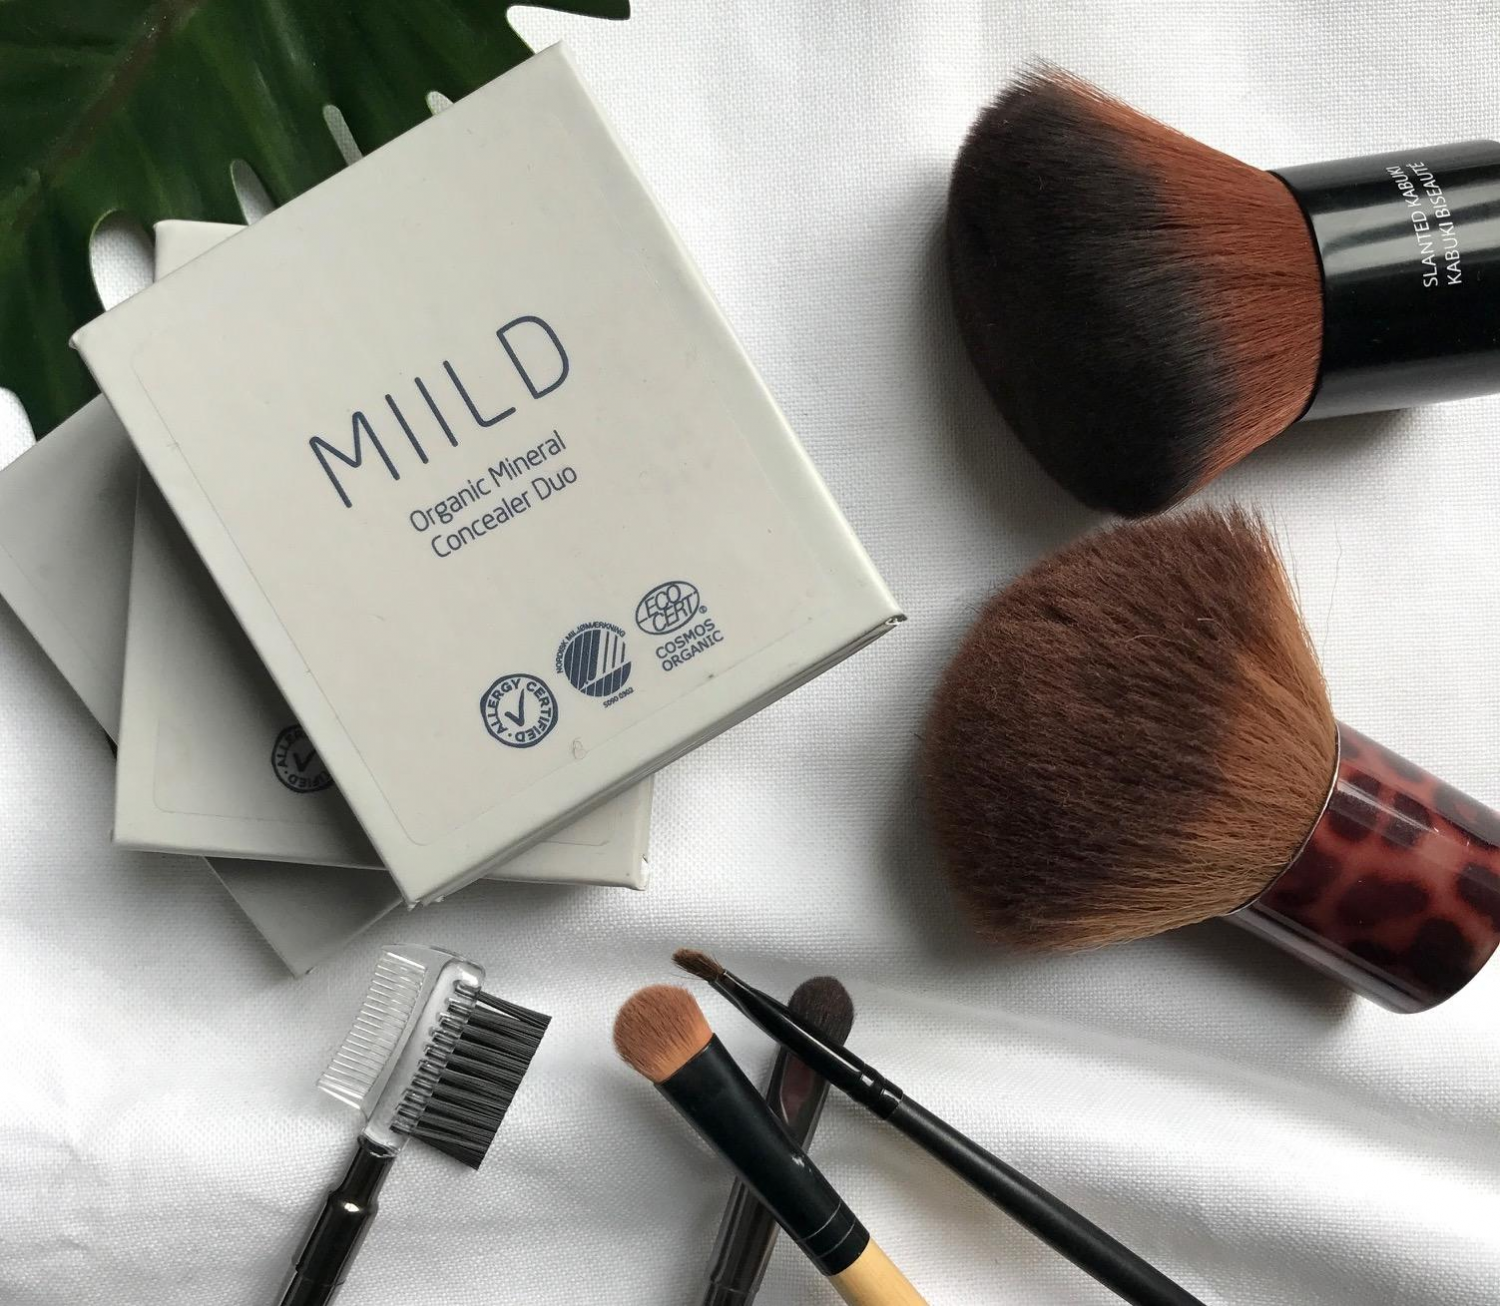 Miild makeup: Nyt, dansk, multifunktionelt og certificeret | Makeupnoter |  Urban Notes